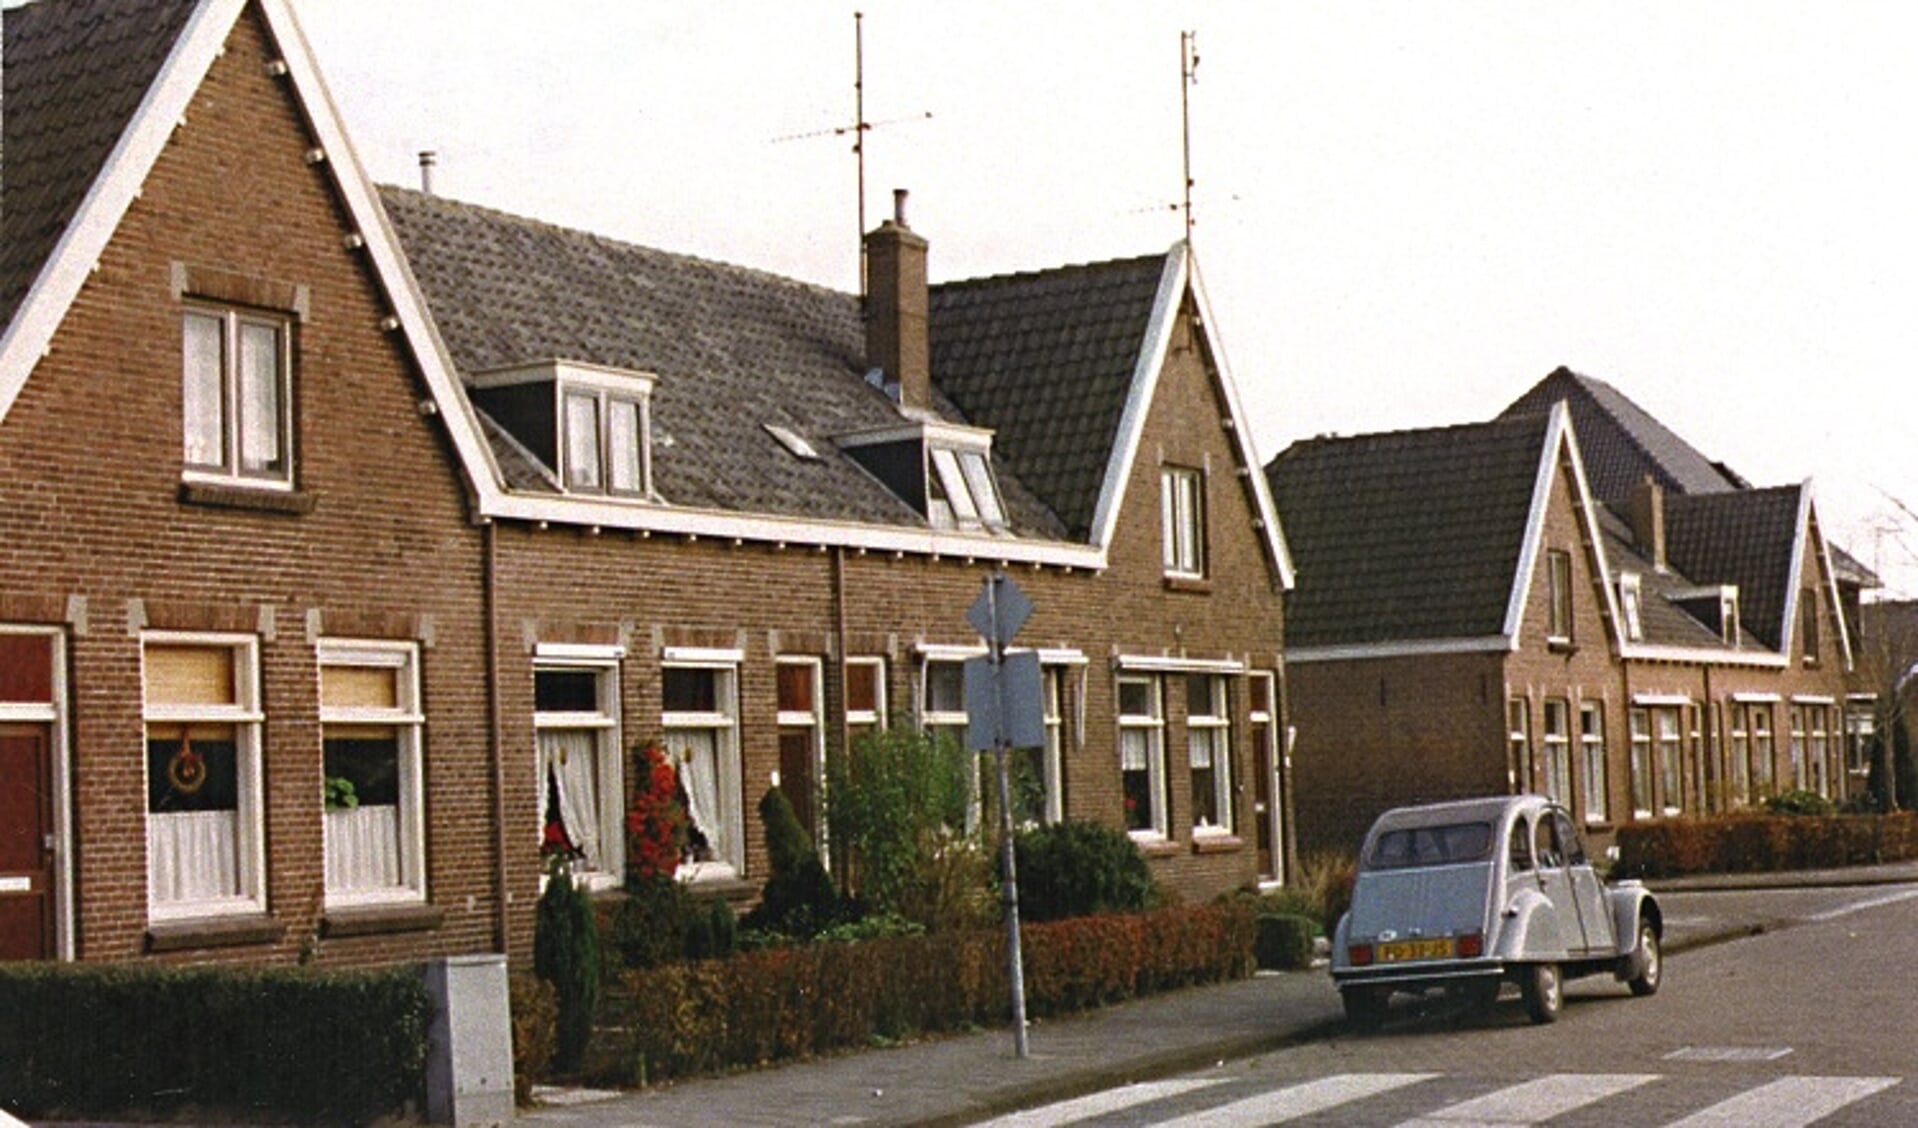 Woningwetwoningen aan de Smidsweg die een eenheid vormen met de Roodenburg Vermaatstraat.







smidsweg, woningwetwoningen, roodenburg vermaatstraat,